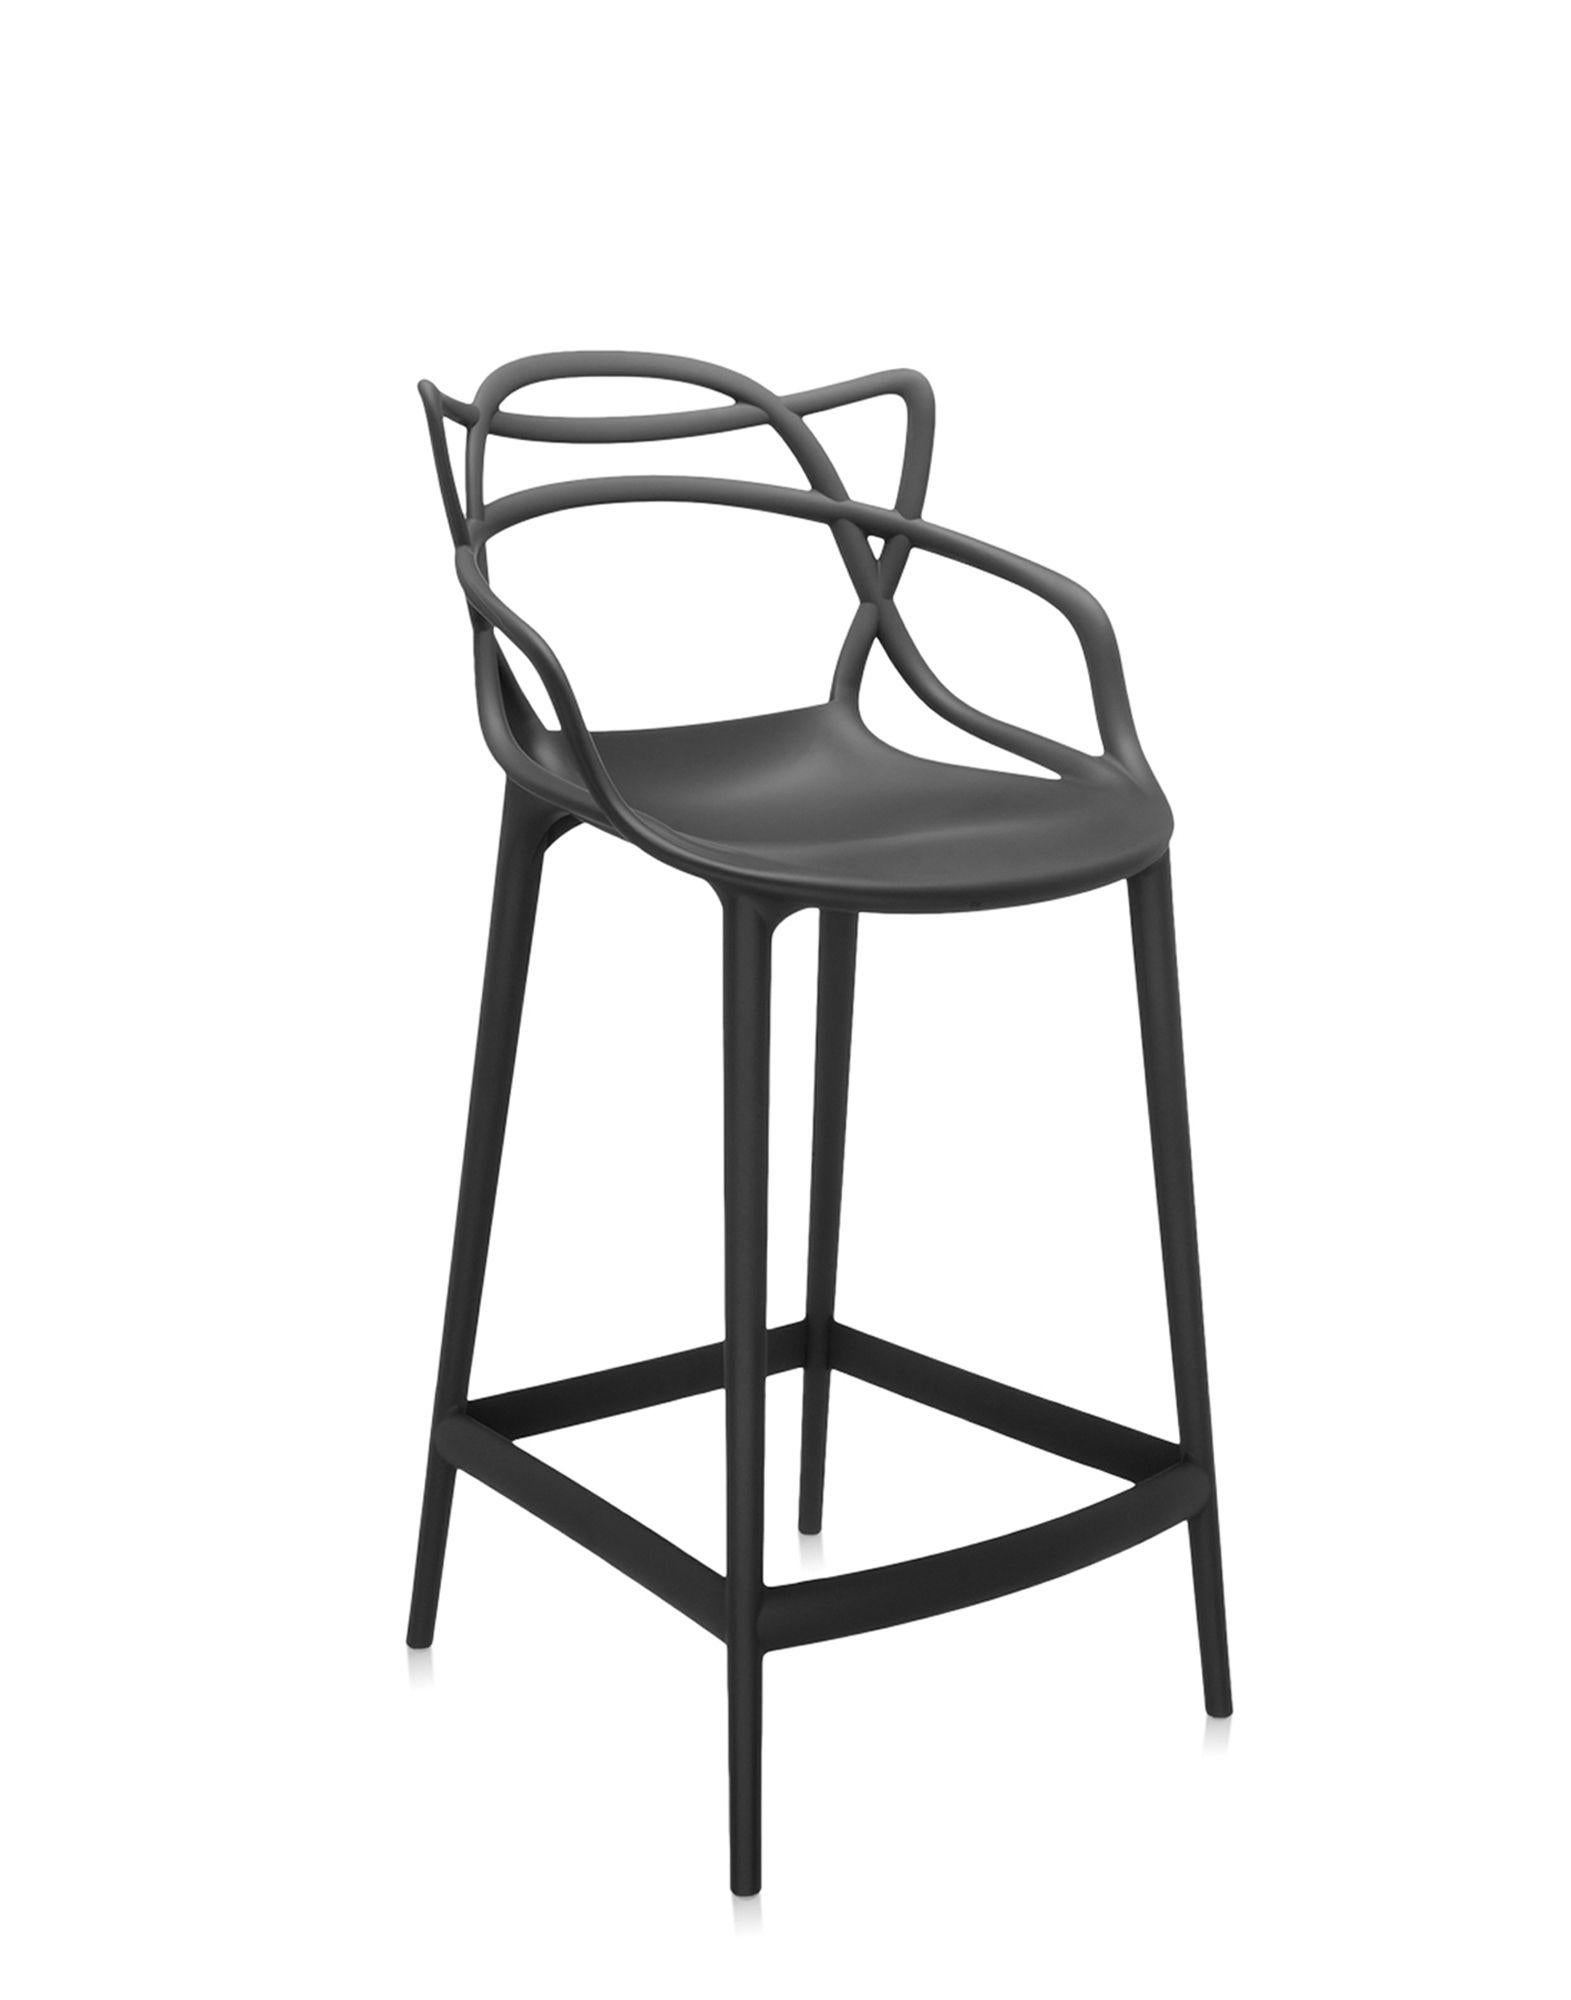 Kartell propose également une version tabouret de la chaise Masters, lauréate du Good Design Award 2010 et du Red Dot Award 2013, et best-seller mondial. Les pieds sont allongés et l'assise est rétrécie, mais l'aspect graphique inimitable du cadre,